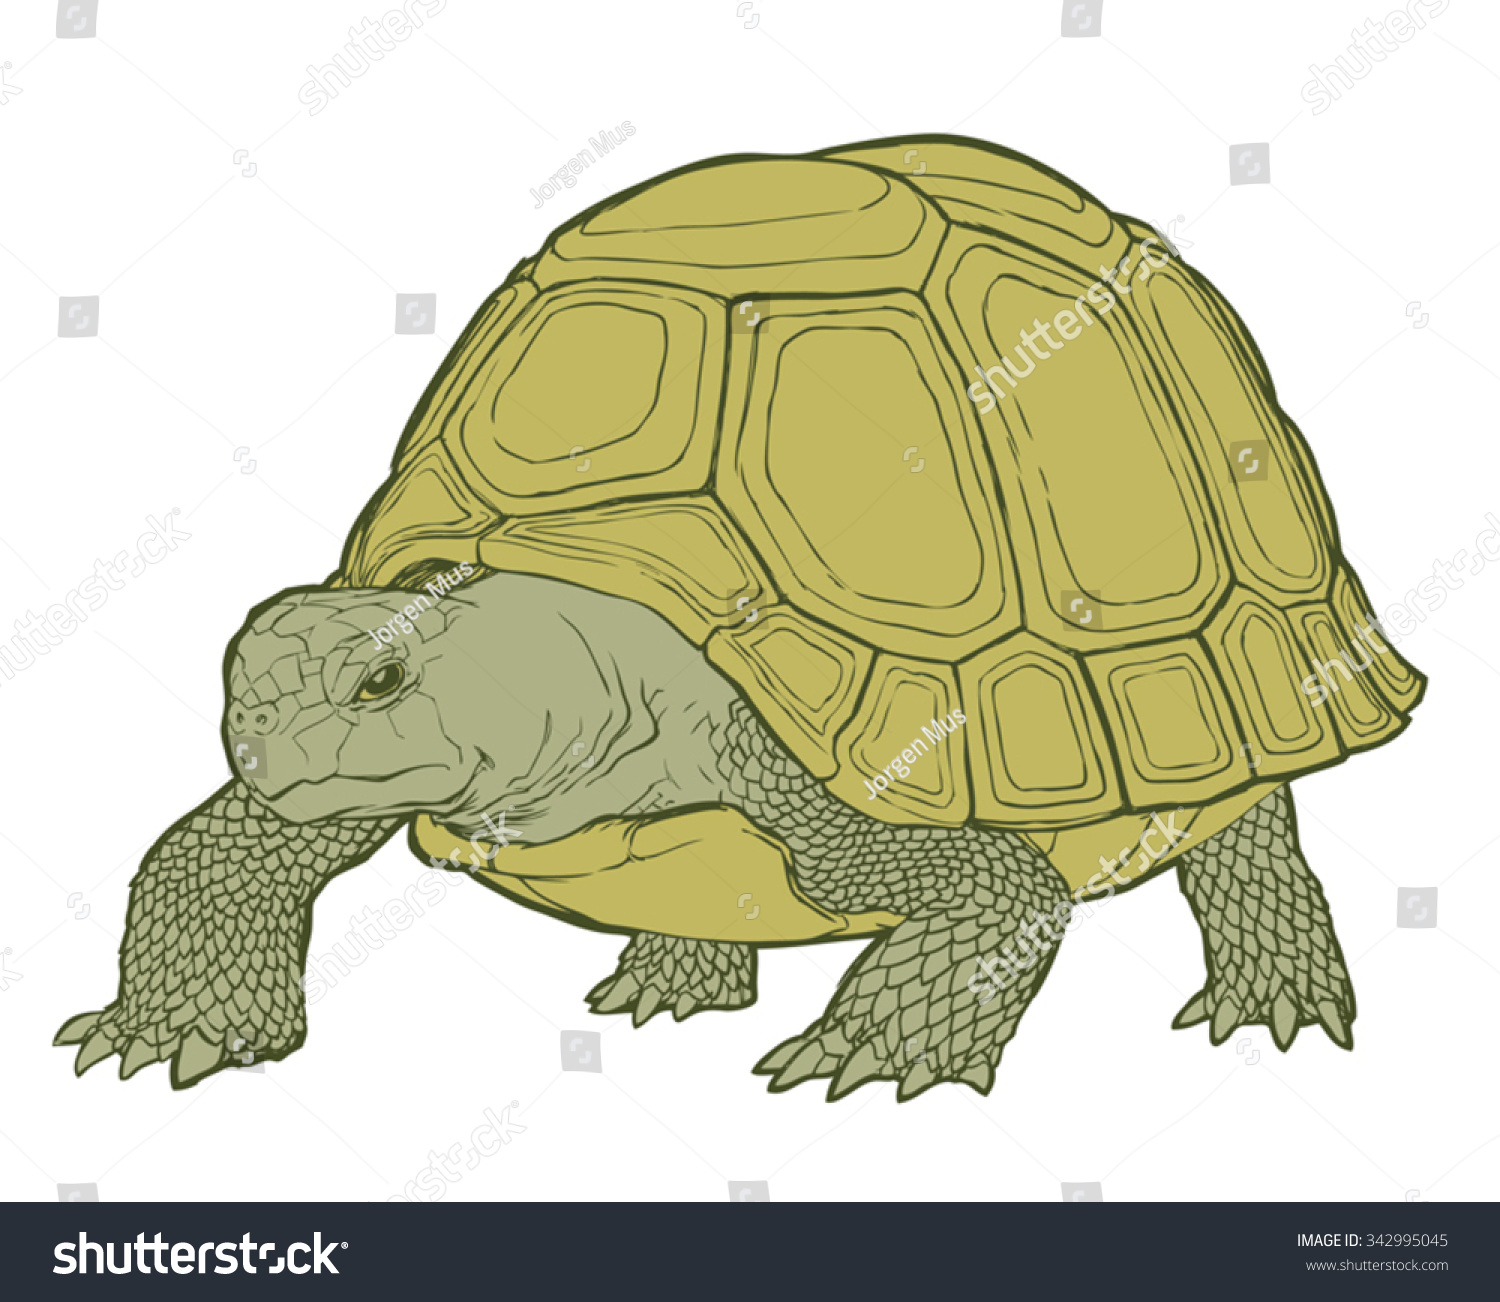 Панцирь черепахи на прозрачном фоне